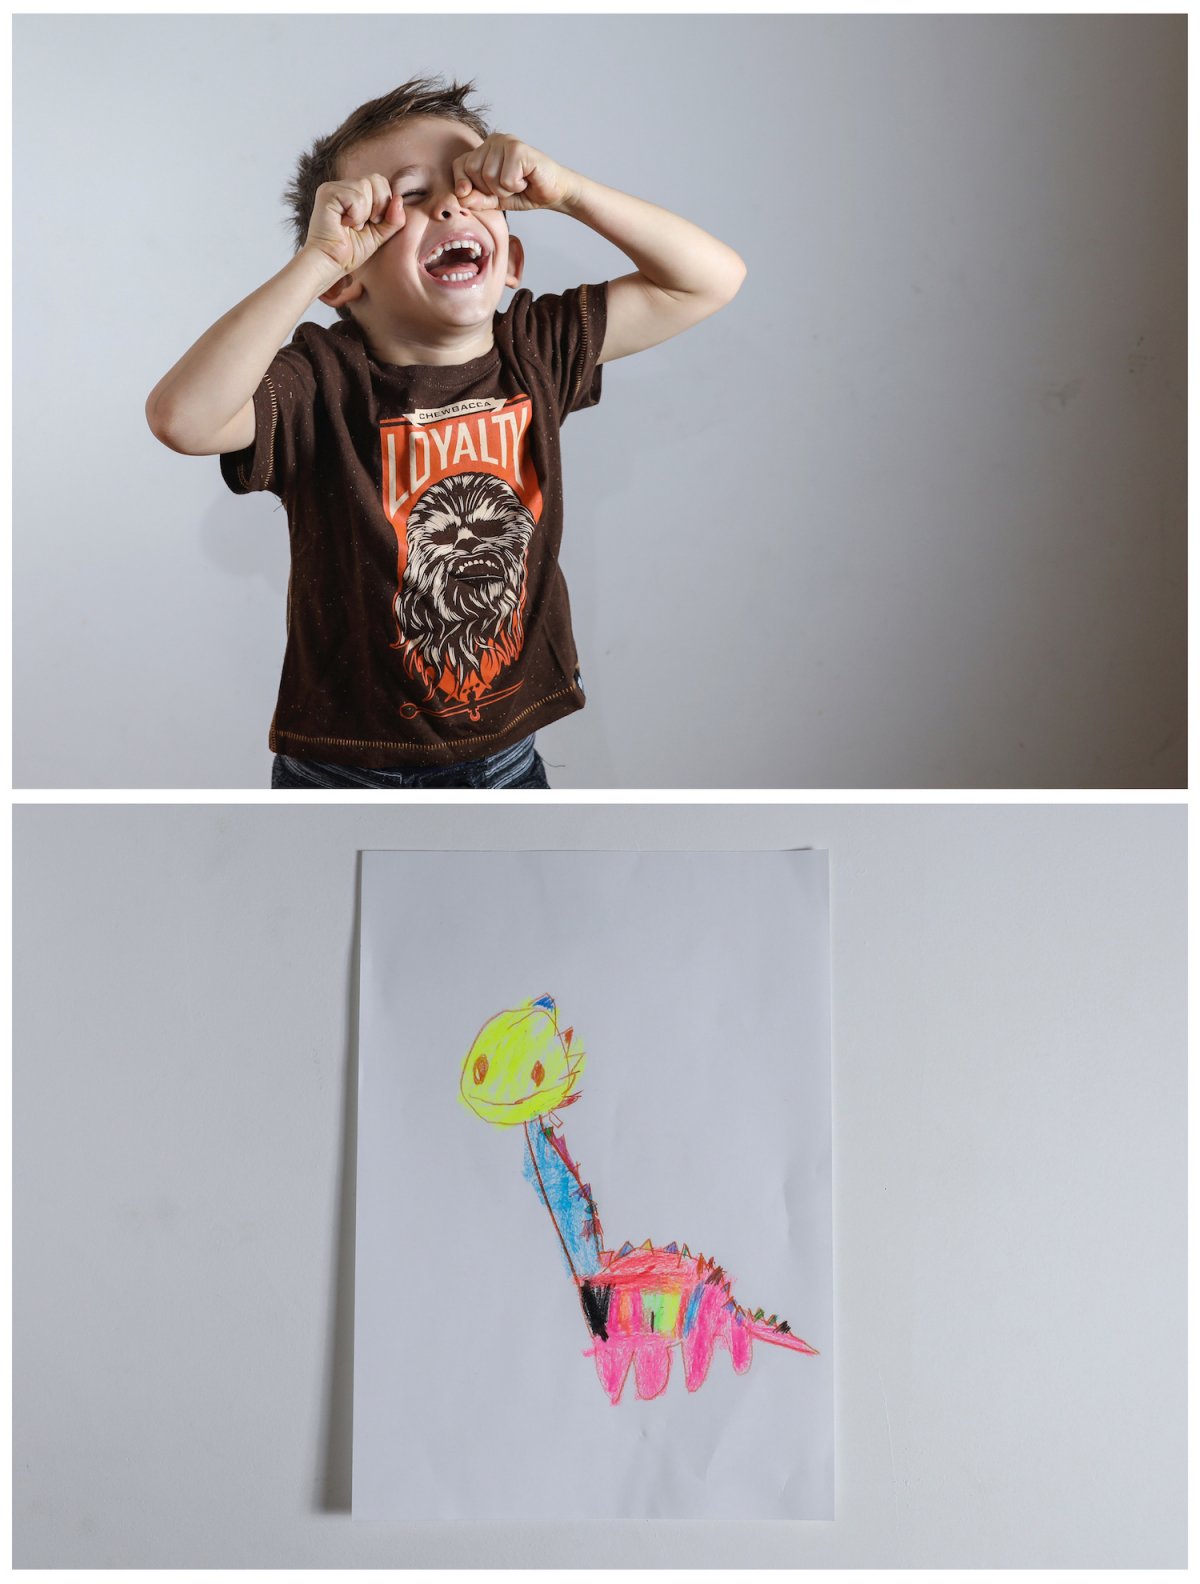 2. Четырехлетний Макс из Белграда хотел бы получить в подарок игрушечного динозавра.